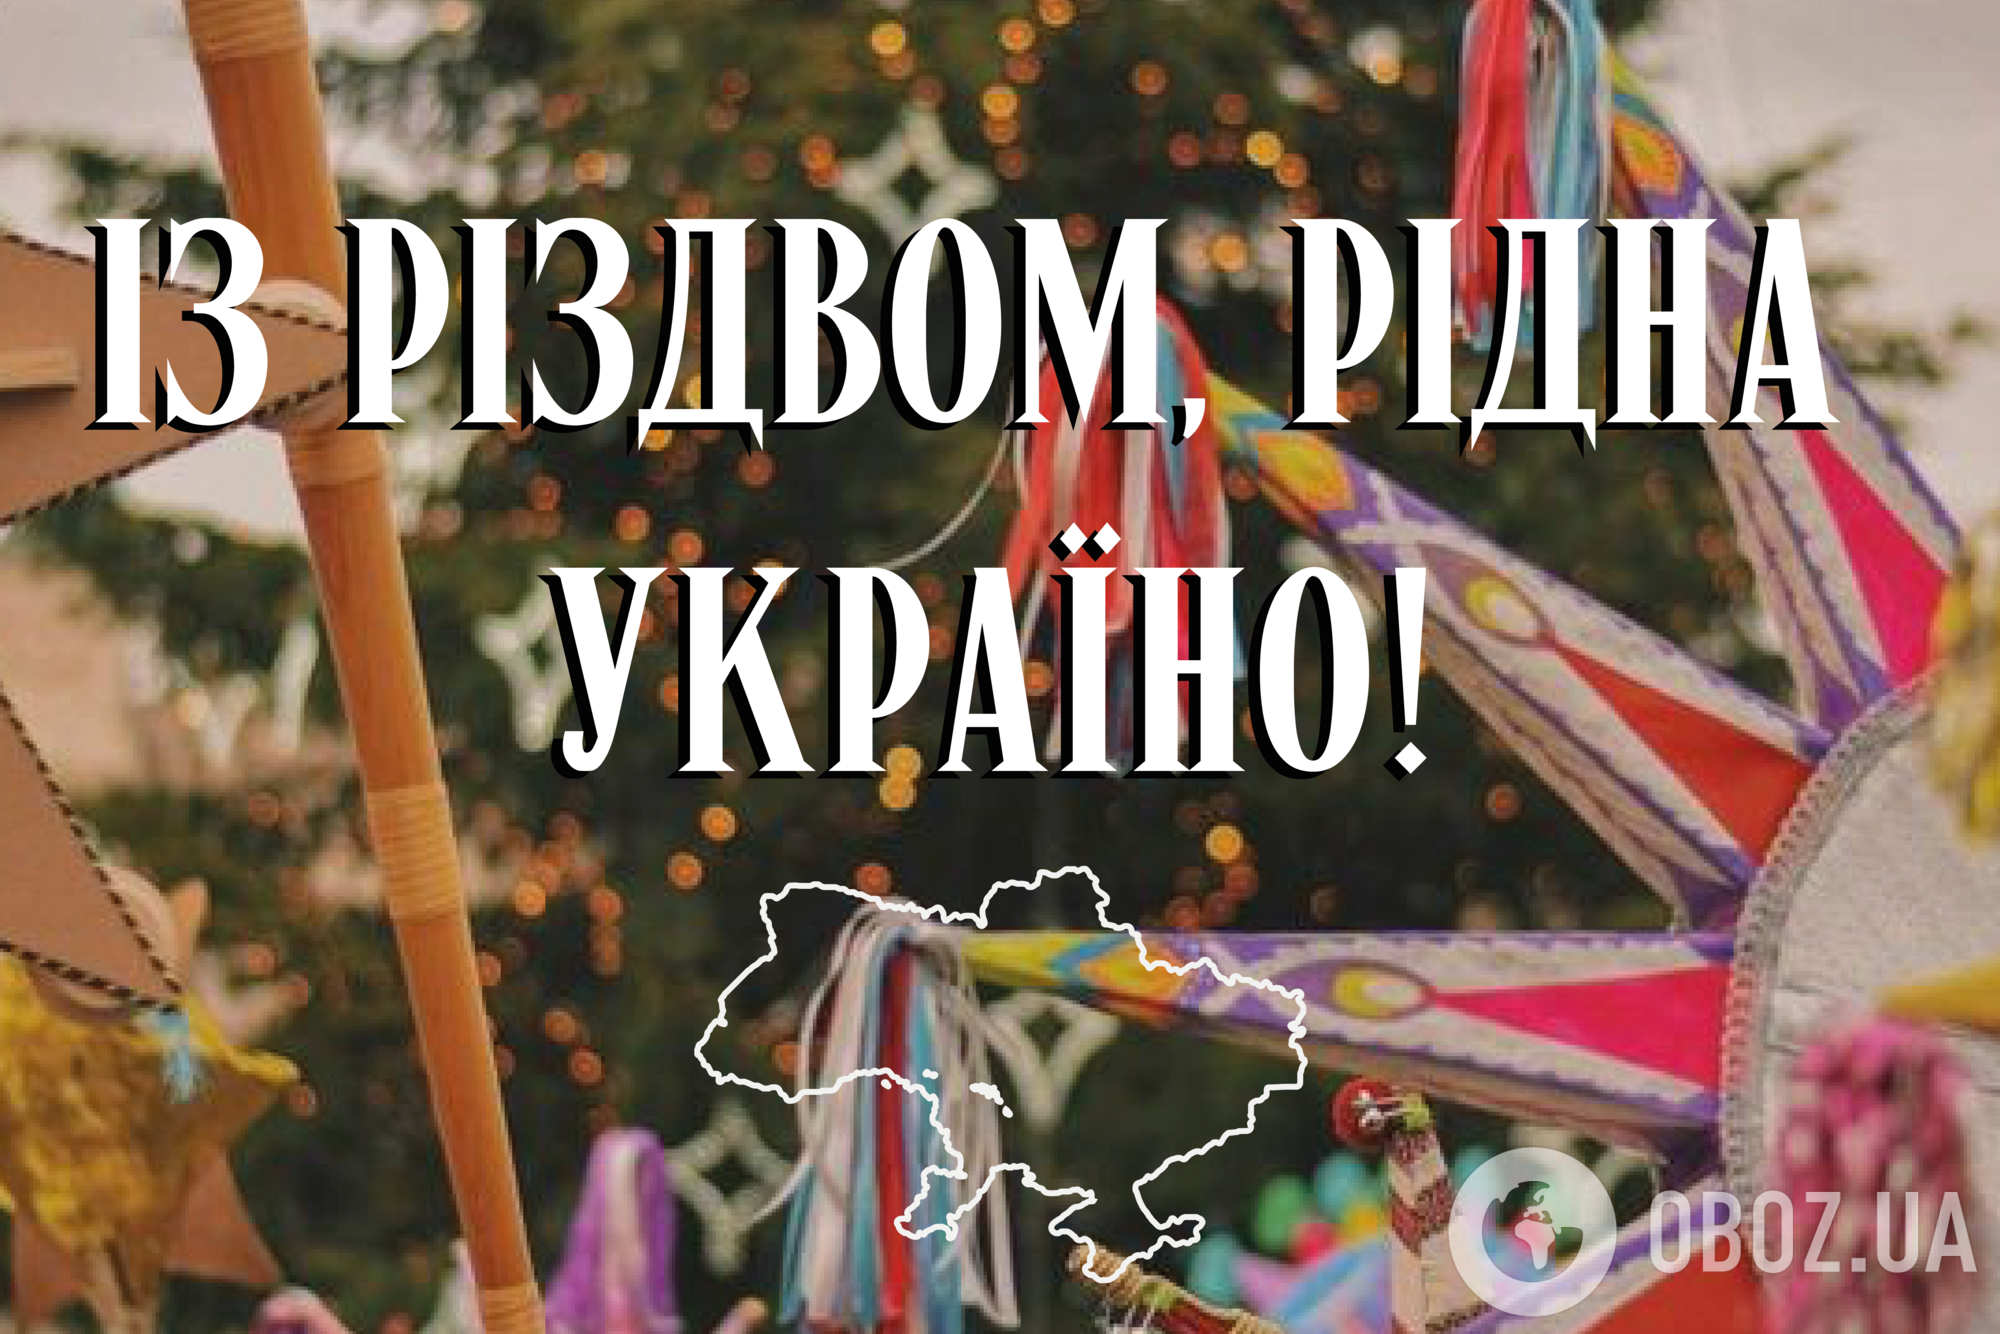 С Рождеством! Лучшие поздравления на украинском